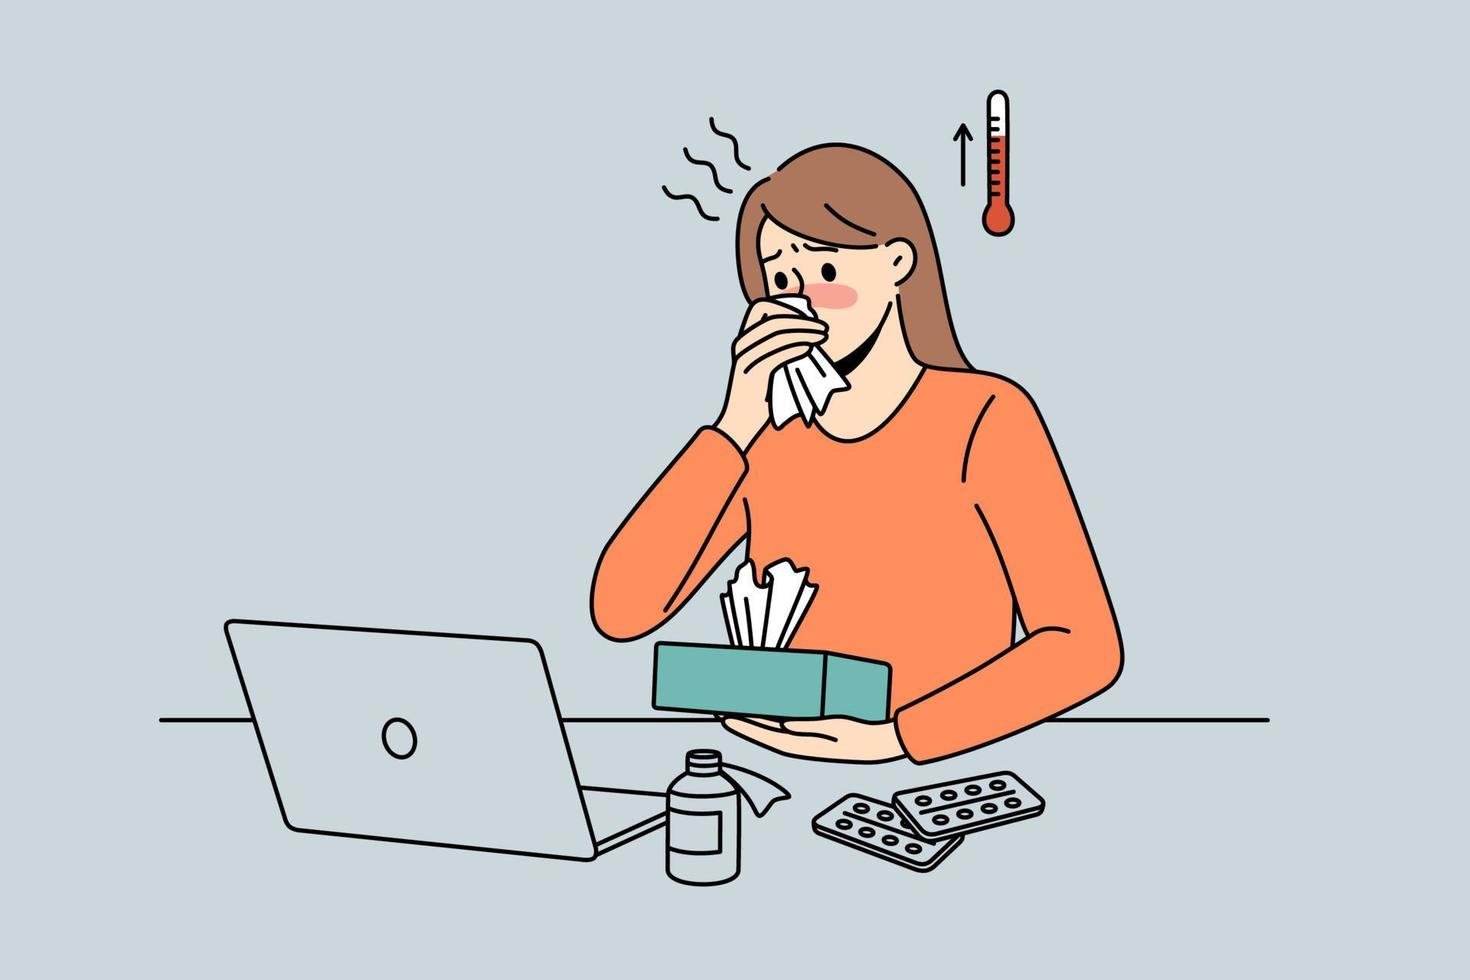 fiebergefühl und krankes konzept. Cartoon-Figur der jungen Arbeiterin, die im Büro am Laptop sitzt und hohe Temperaturen und kranke Vektorgrafiken hat vektor